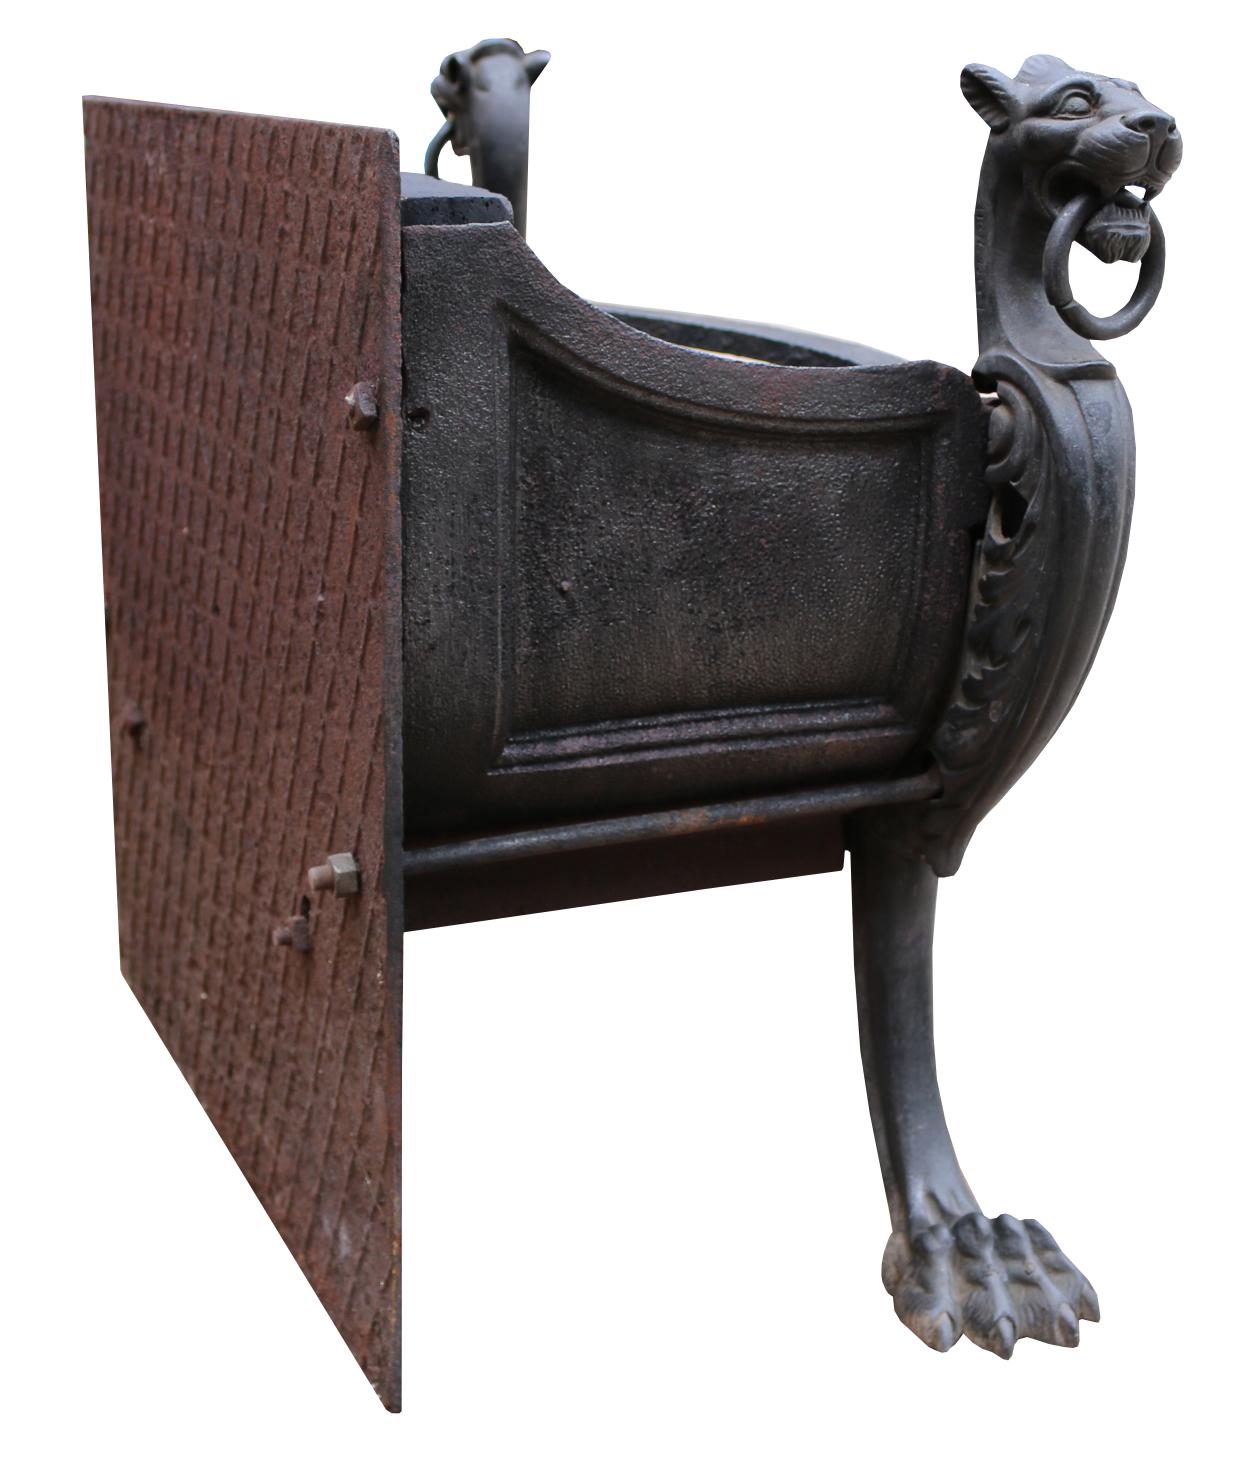 Une grille de cheminée de style victorien rococo en fer et bronze. La grille à trois barreaux et à arc est soutenue par une paire de griffons monopodes tenant des anneaux dans leur bouche.